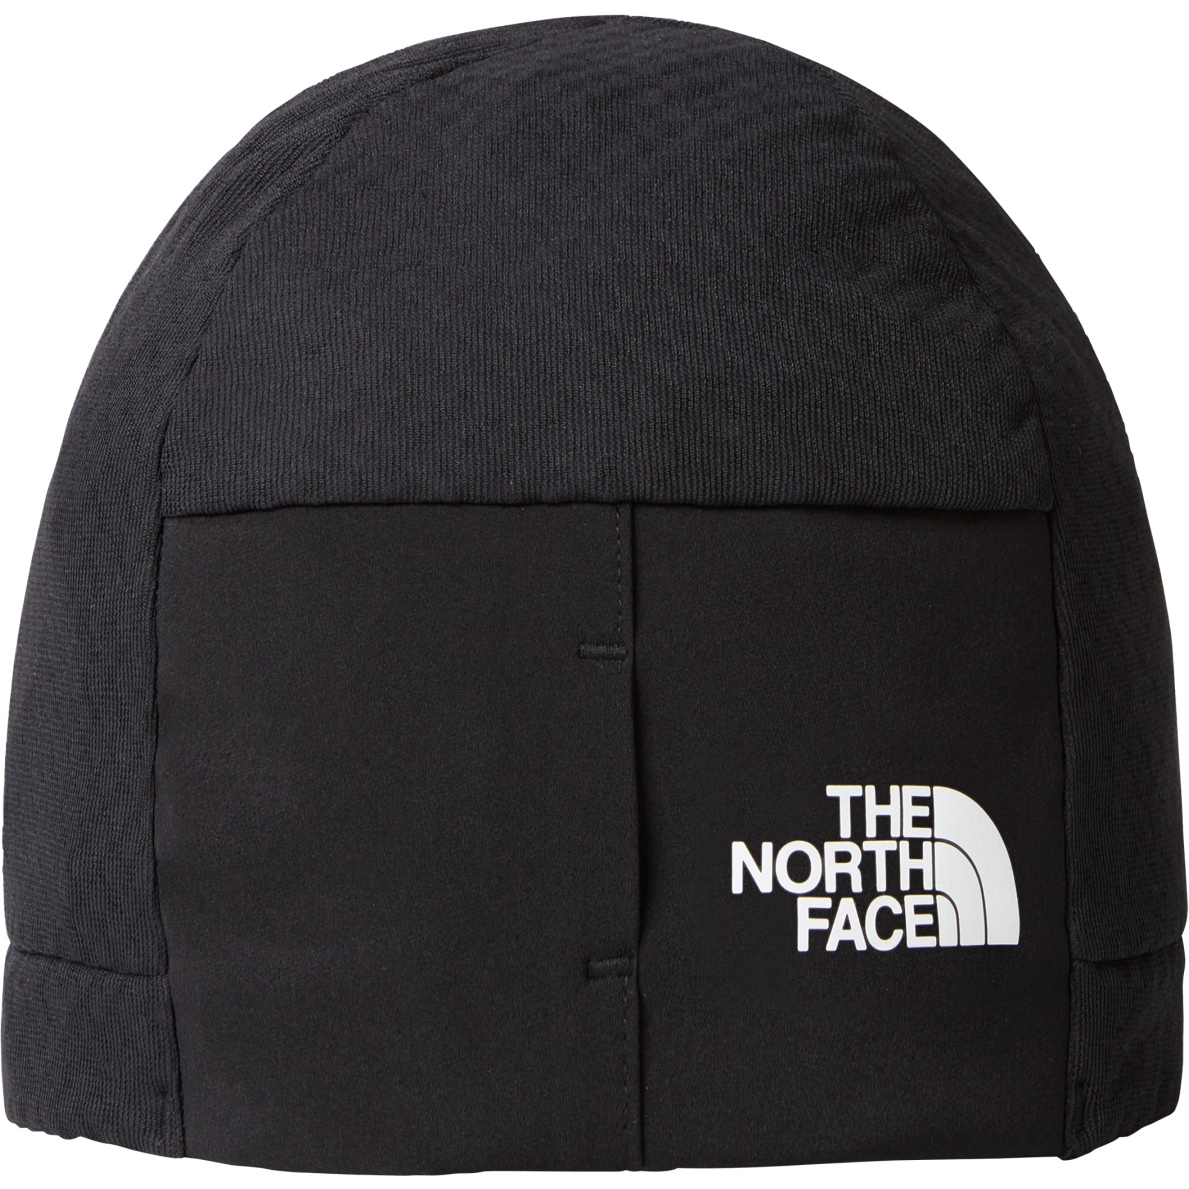 The North Face - Bonnet TNF - Gris